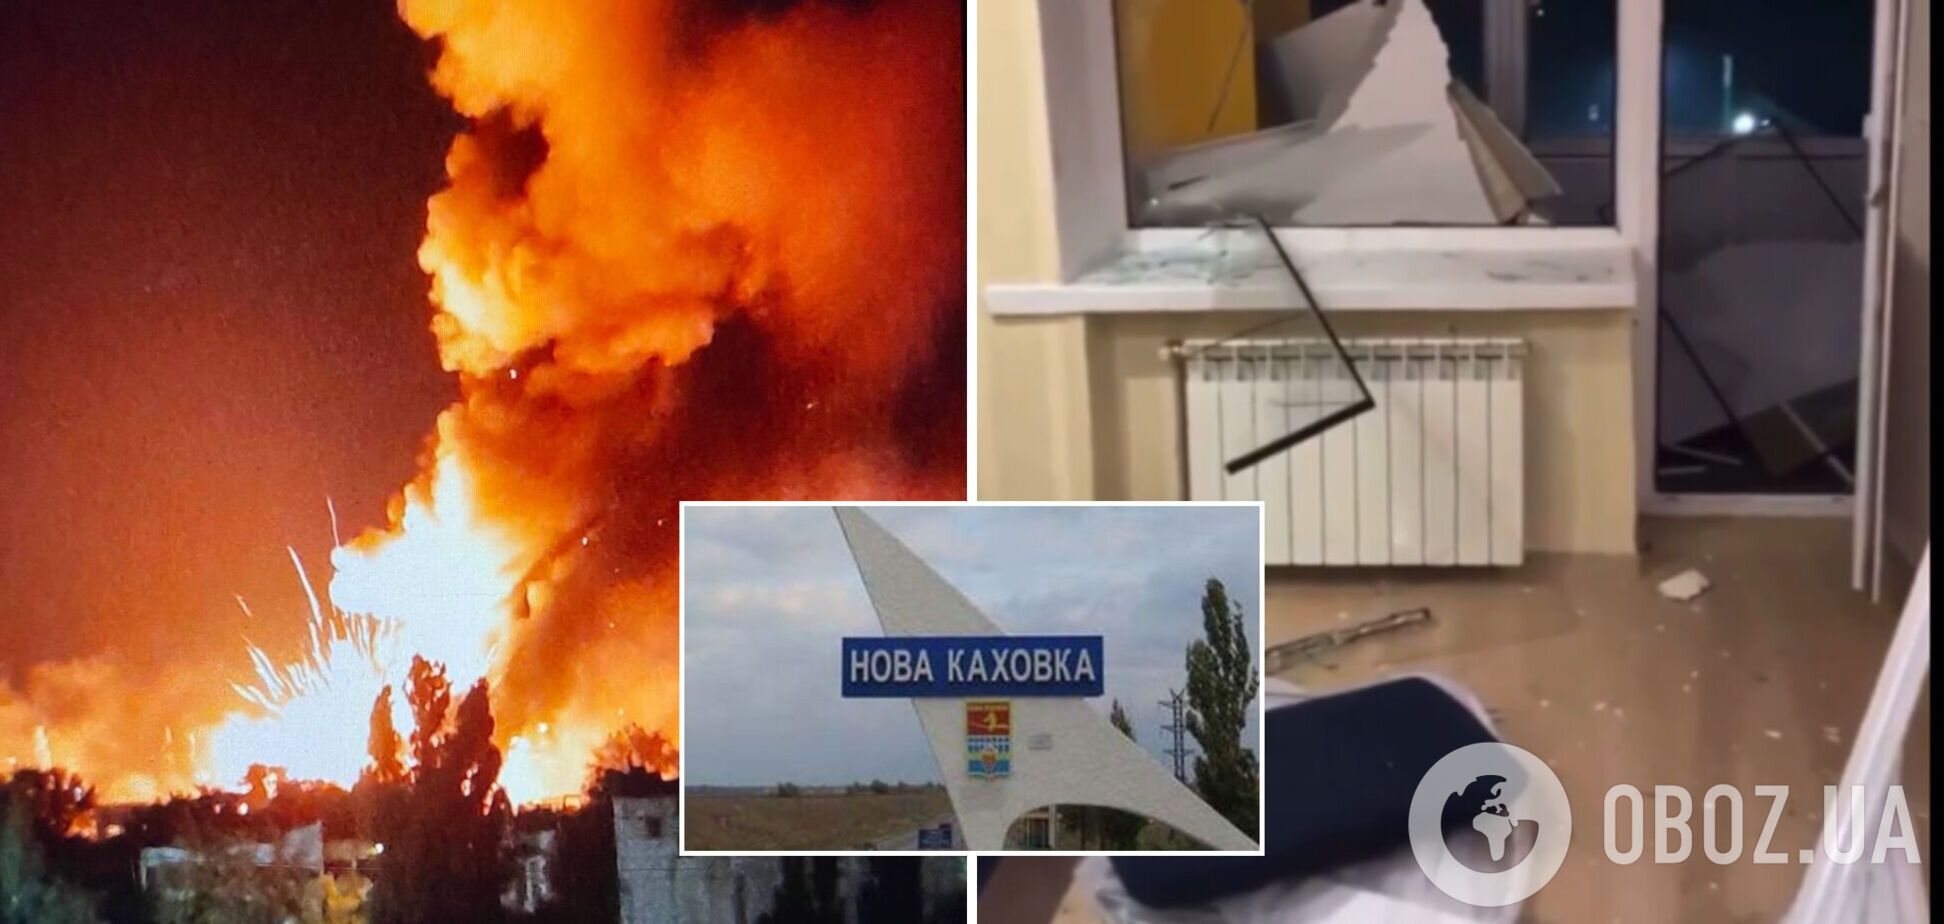 Жительница Новой Каховки оскорбила ВСУ после ударов по складах оккупантов: в ее квартире вылетели окна. Видео